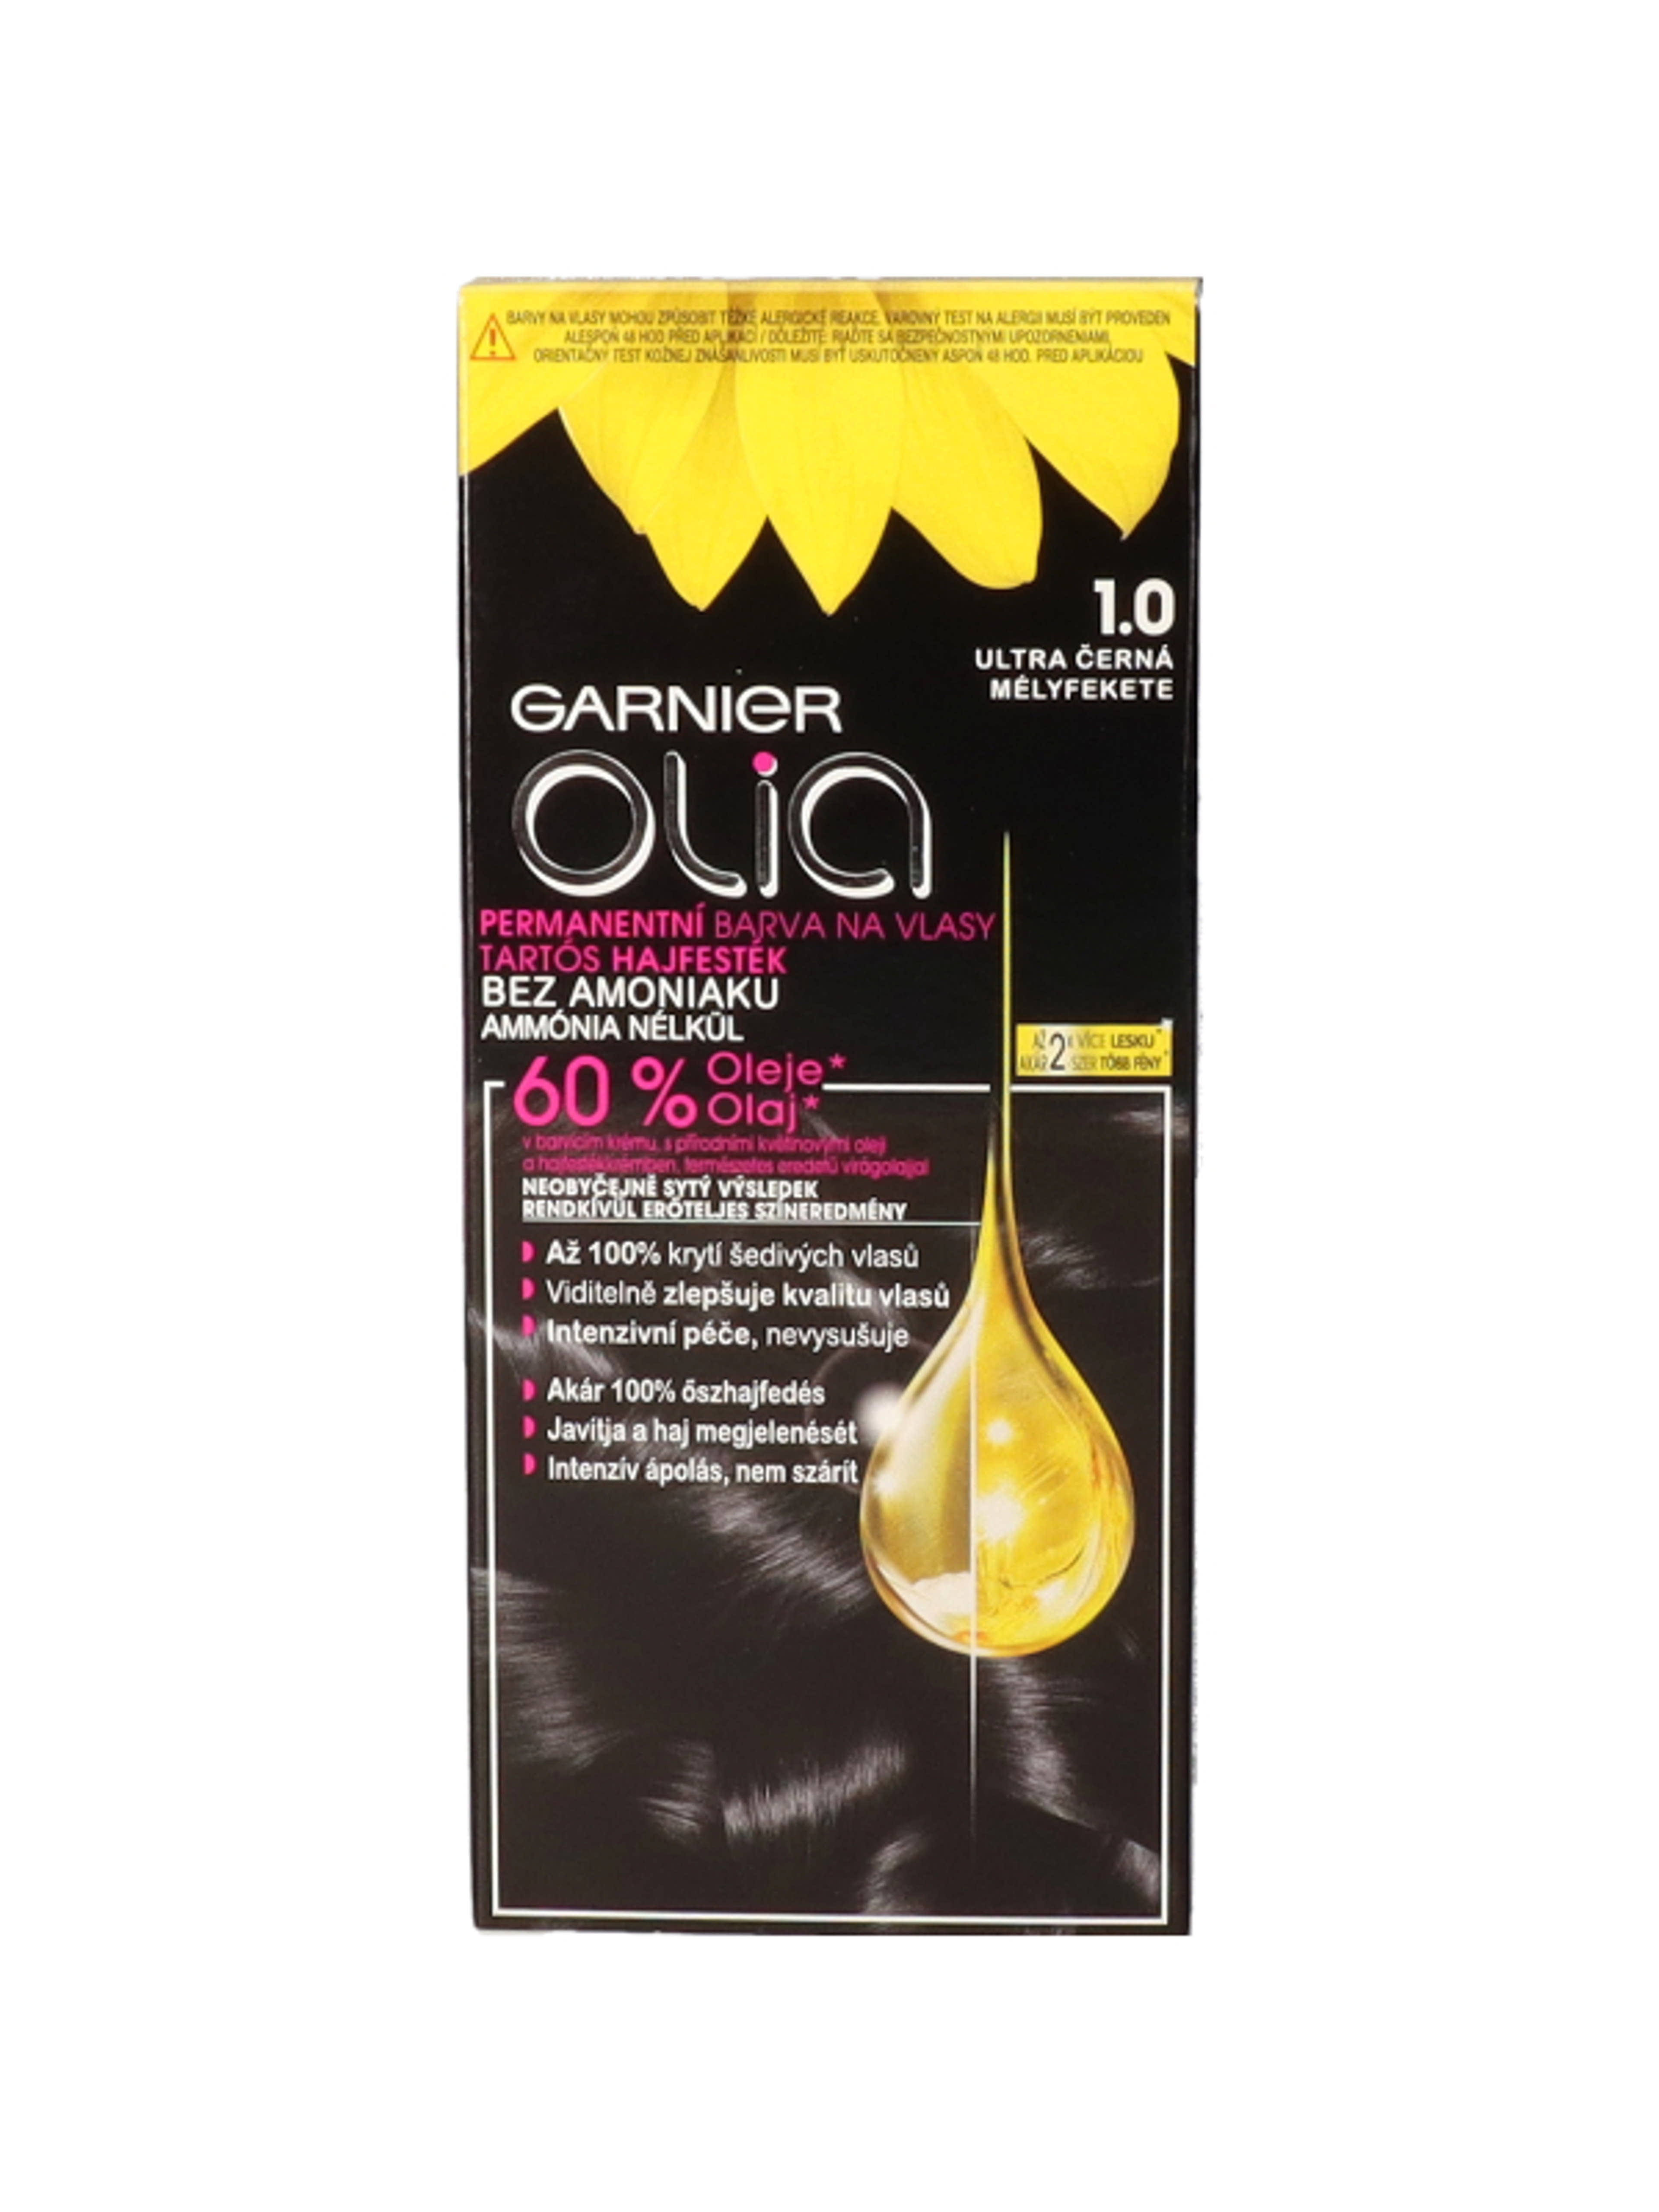 Garnier Olia tartós hajfesték 1.0 Mélyfekete - 1 db-3